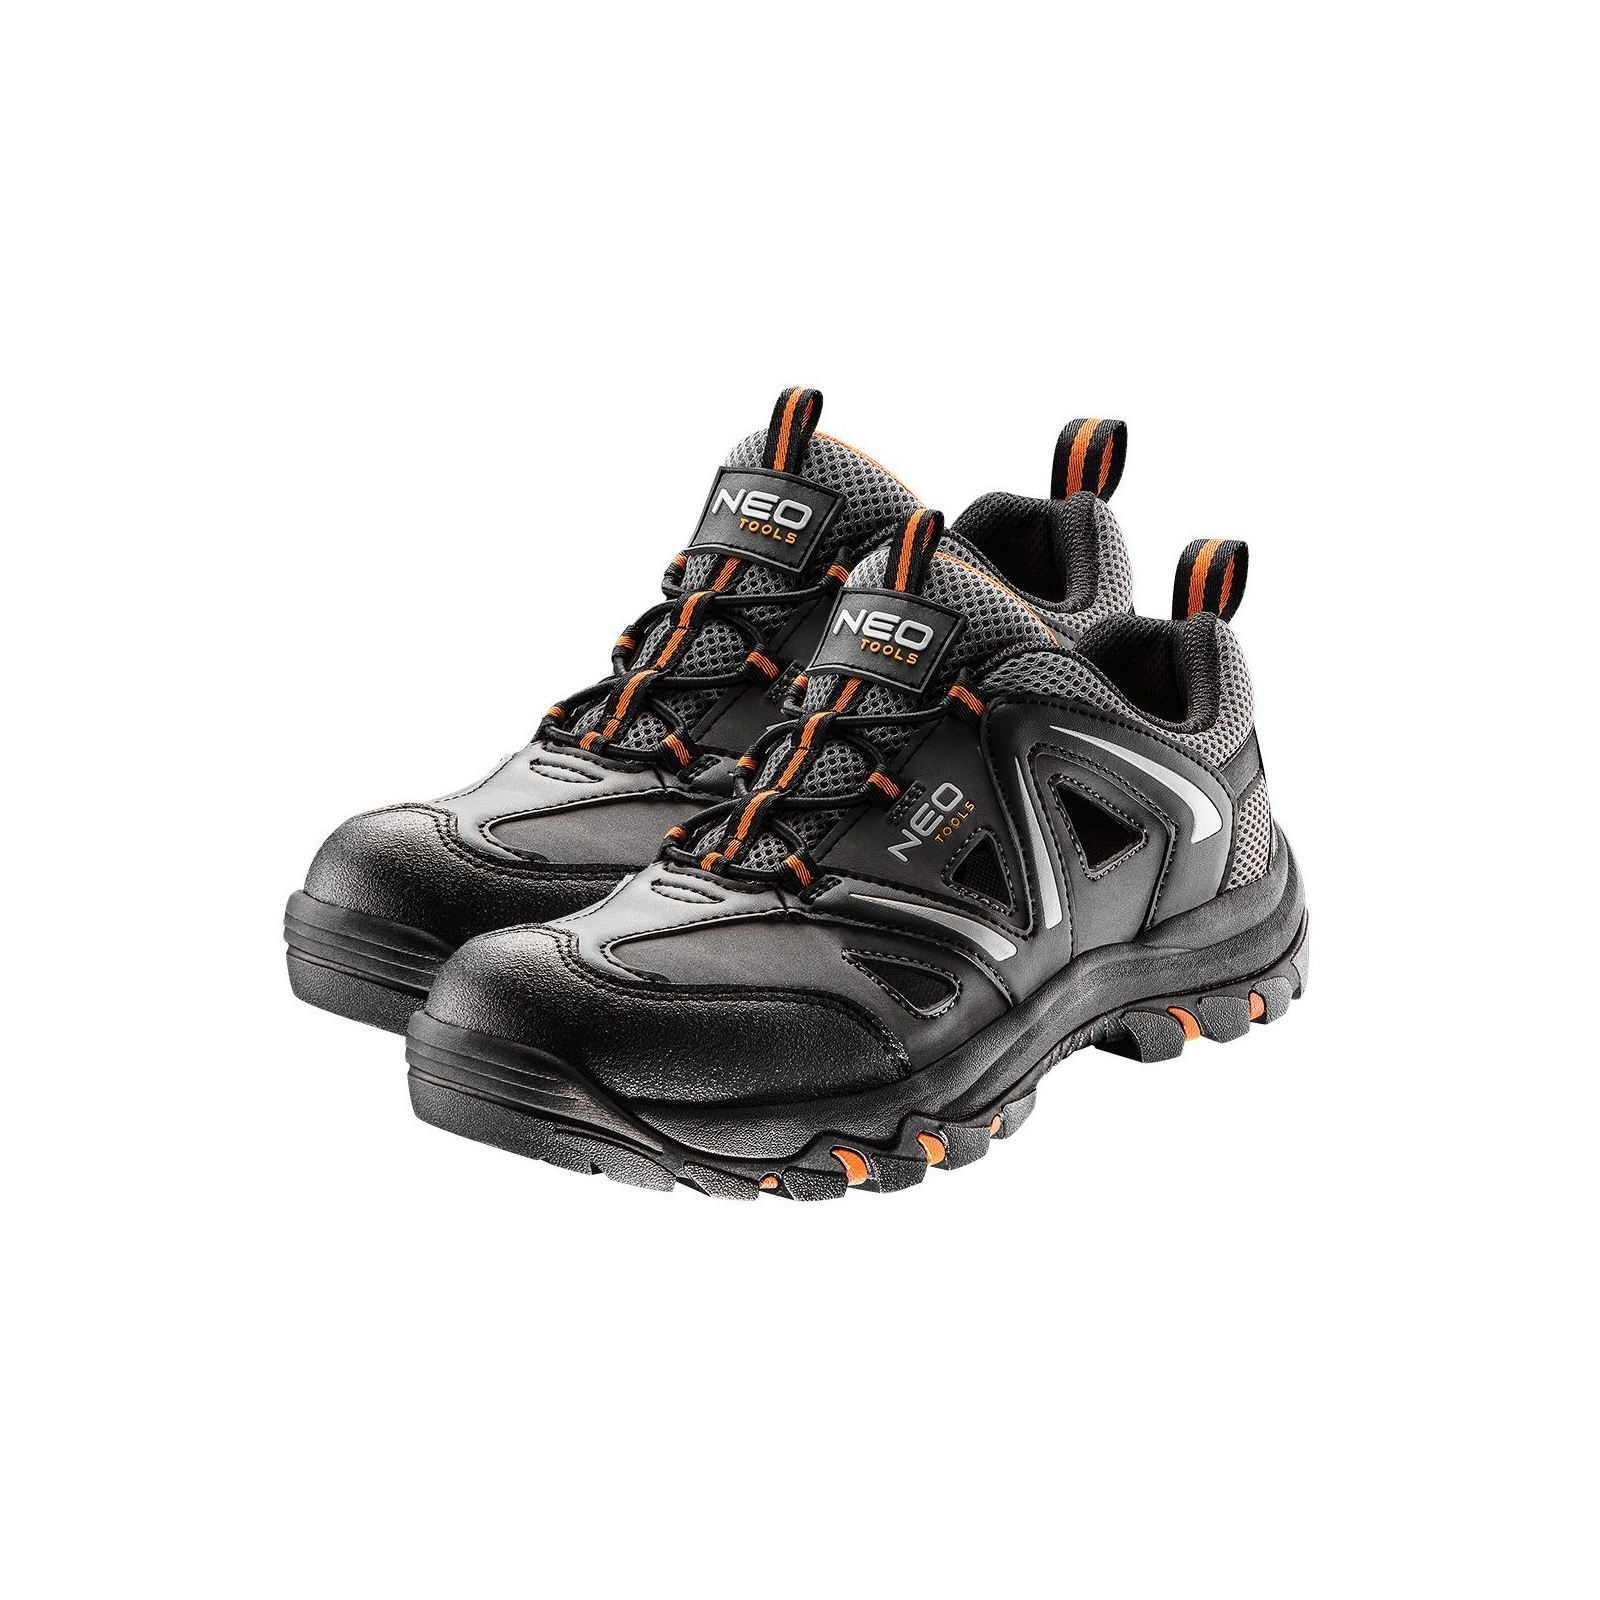 Ботинки рабочие Neo Tools кроссовки дышащие, подошва EVA, класс защиты OB, SRA, р.40 (82-721)